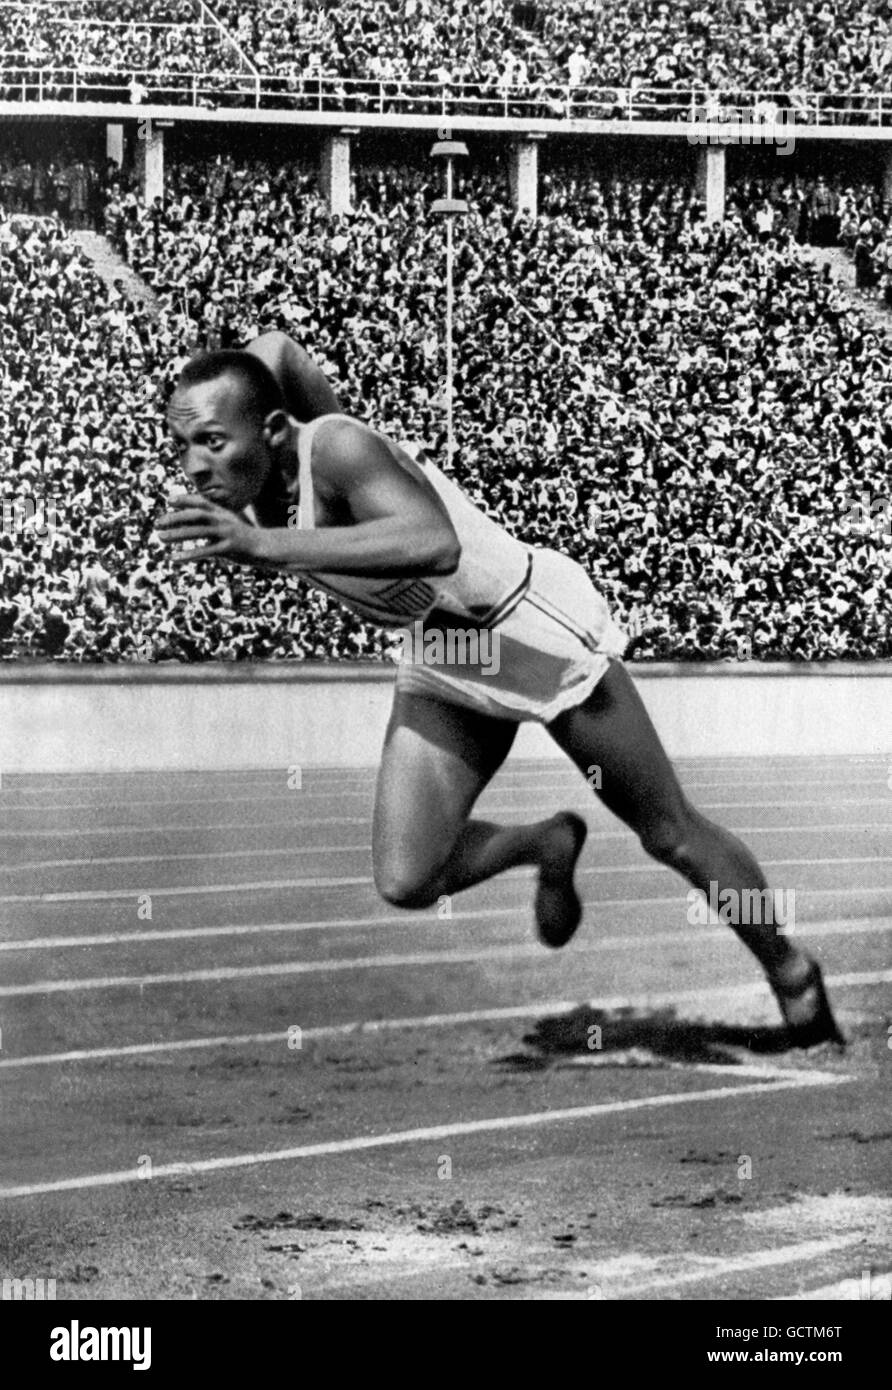 Jesse Owens zu Beginn seiner rekordverdächtigen 200m-Lauf bei den Olympischen Spielen 1936 in Berlin. Stockfoto